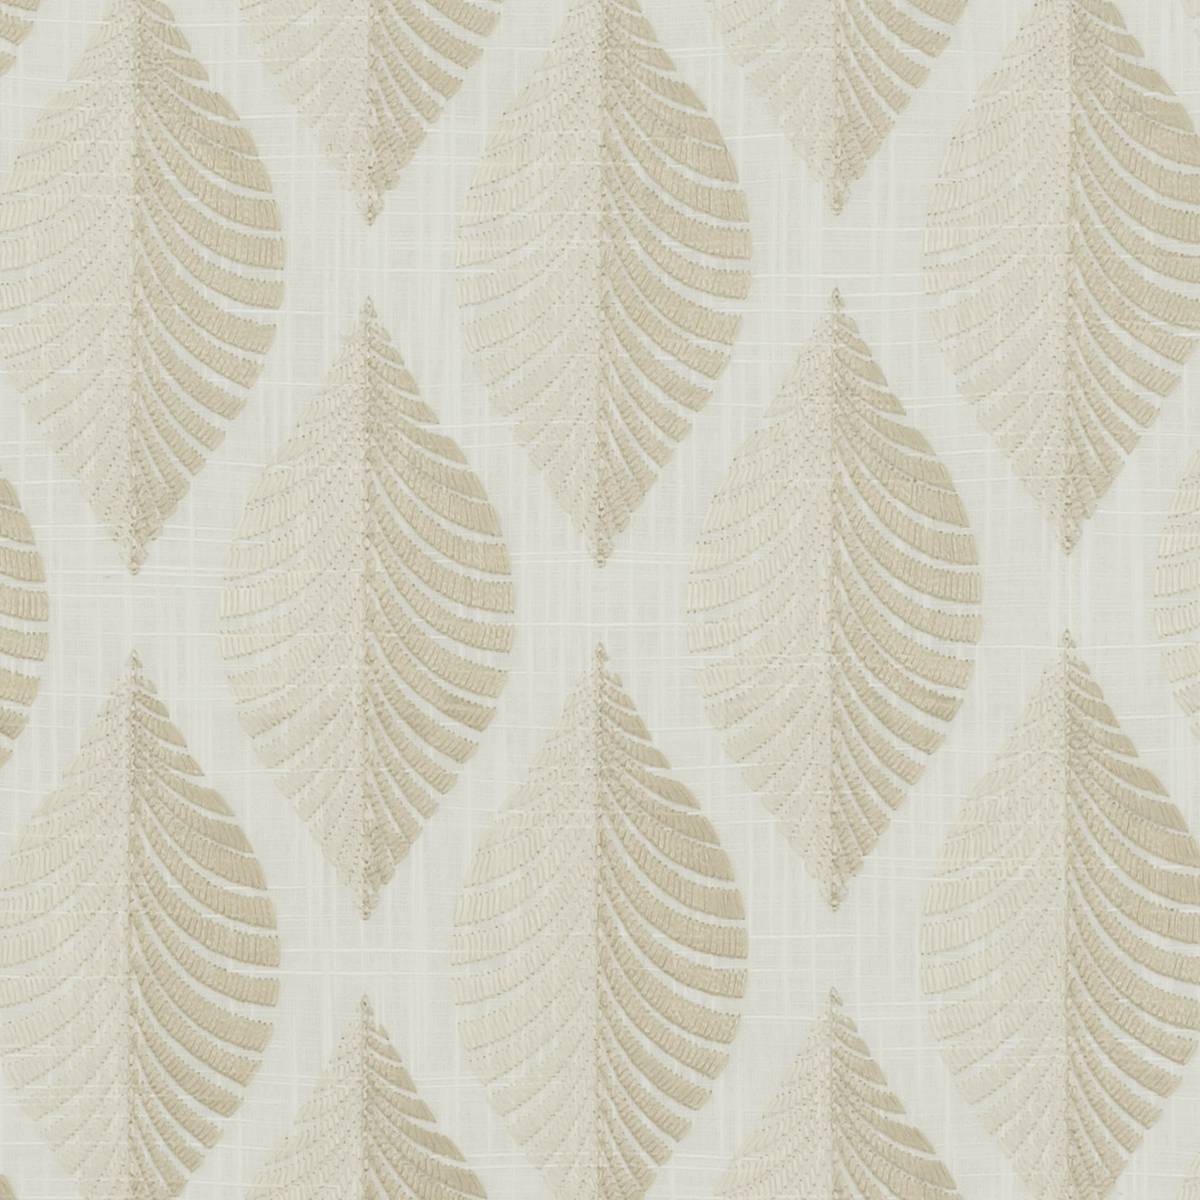 Aspen Ivory/Linen Fabric by Clarke & Clarke